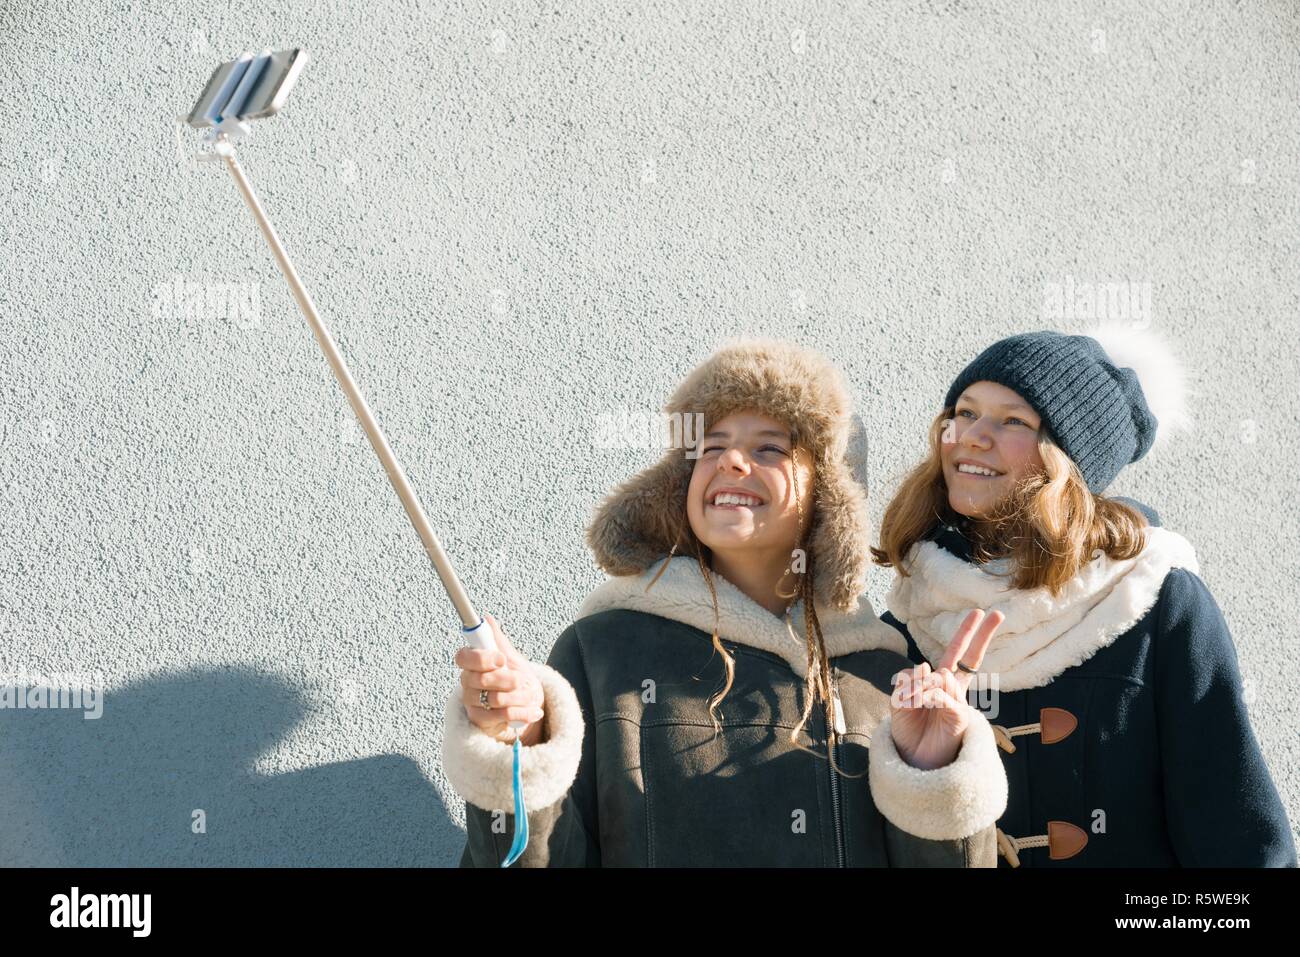 Zwei junge Mädchen im Teenageralter Spaß im Freien, lächelnd Freundinnen glücklich im Winter Kleidung unter selfie, positive Menschen und Freundschaft Konzept Stockfoto